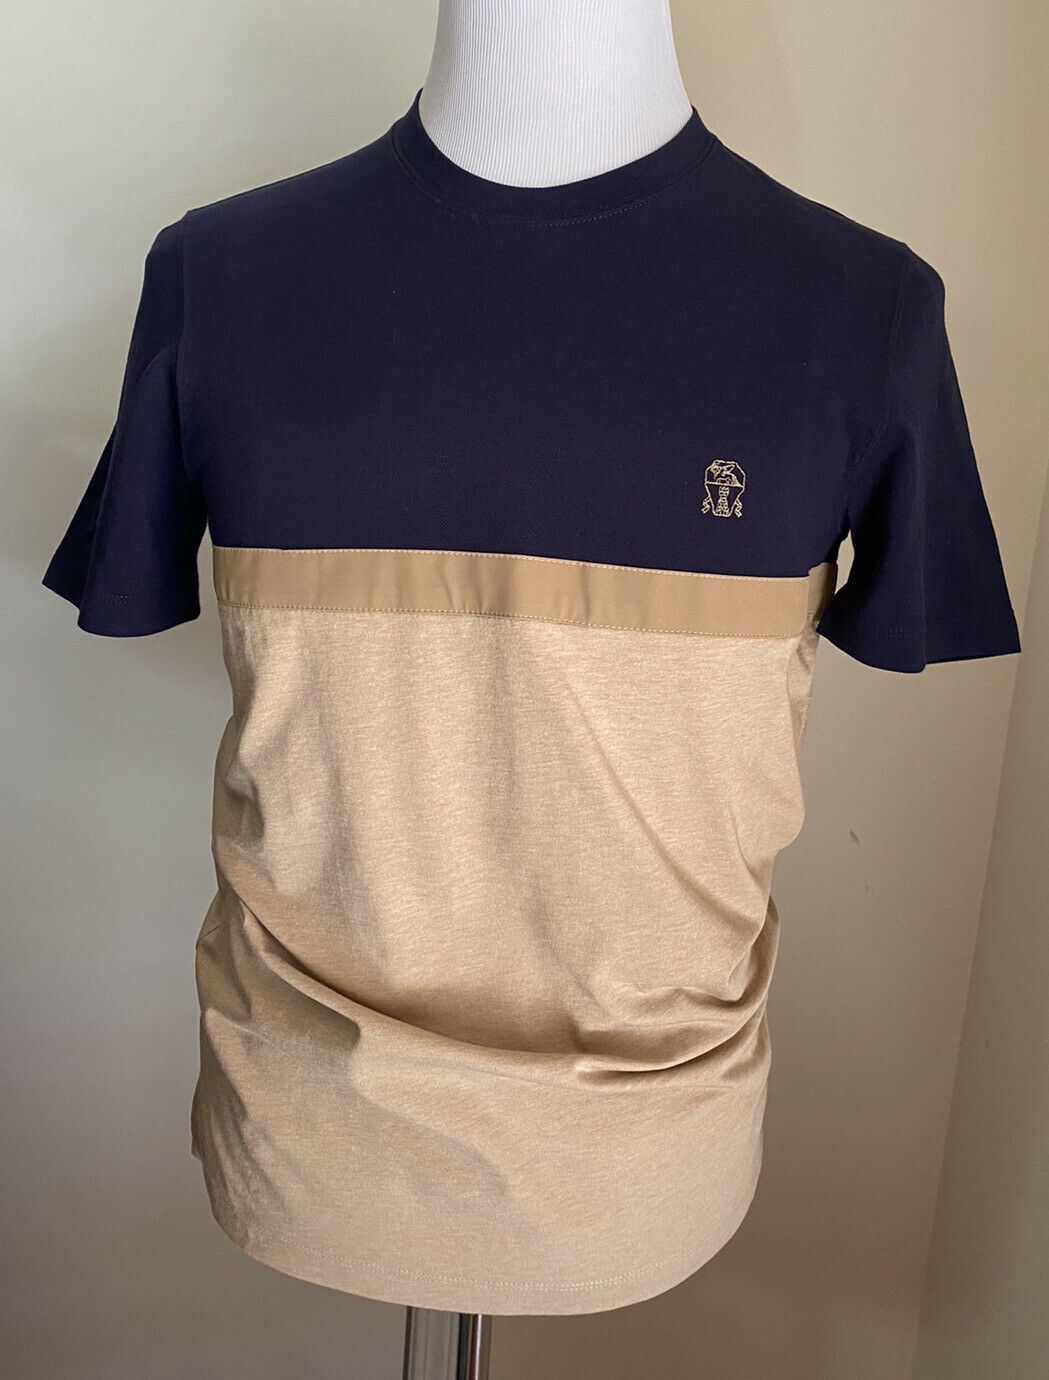 Новая мужская футболка Brunello Cucinelli, синяя/коричневая, размер S, Италия, $575